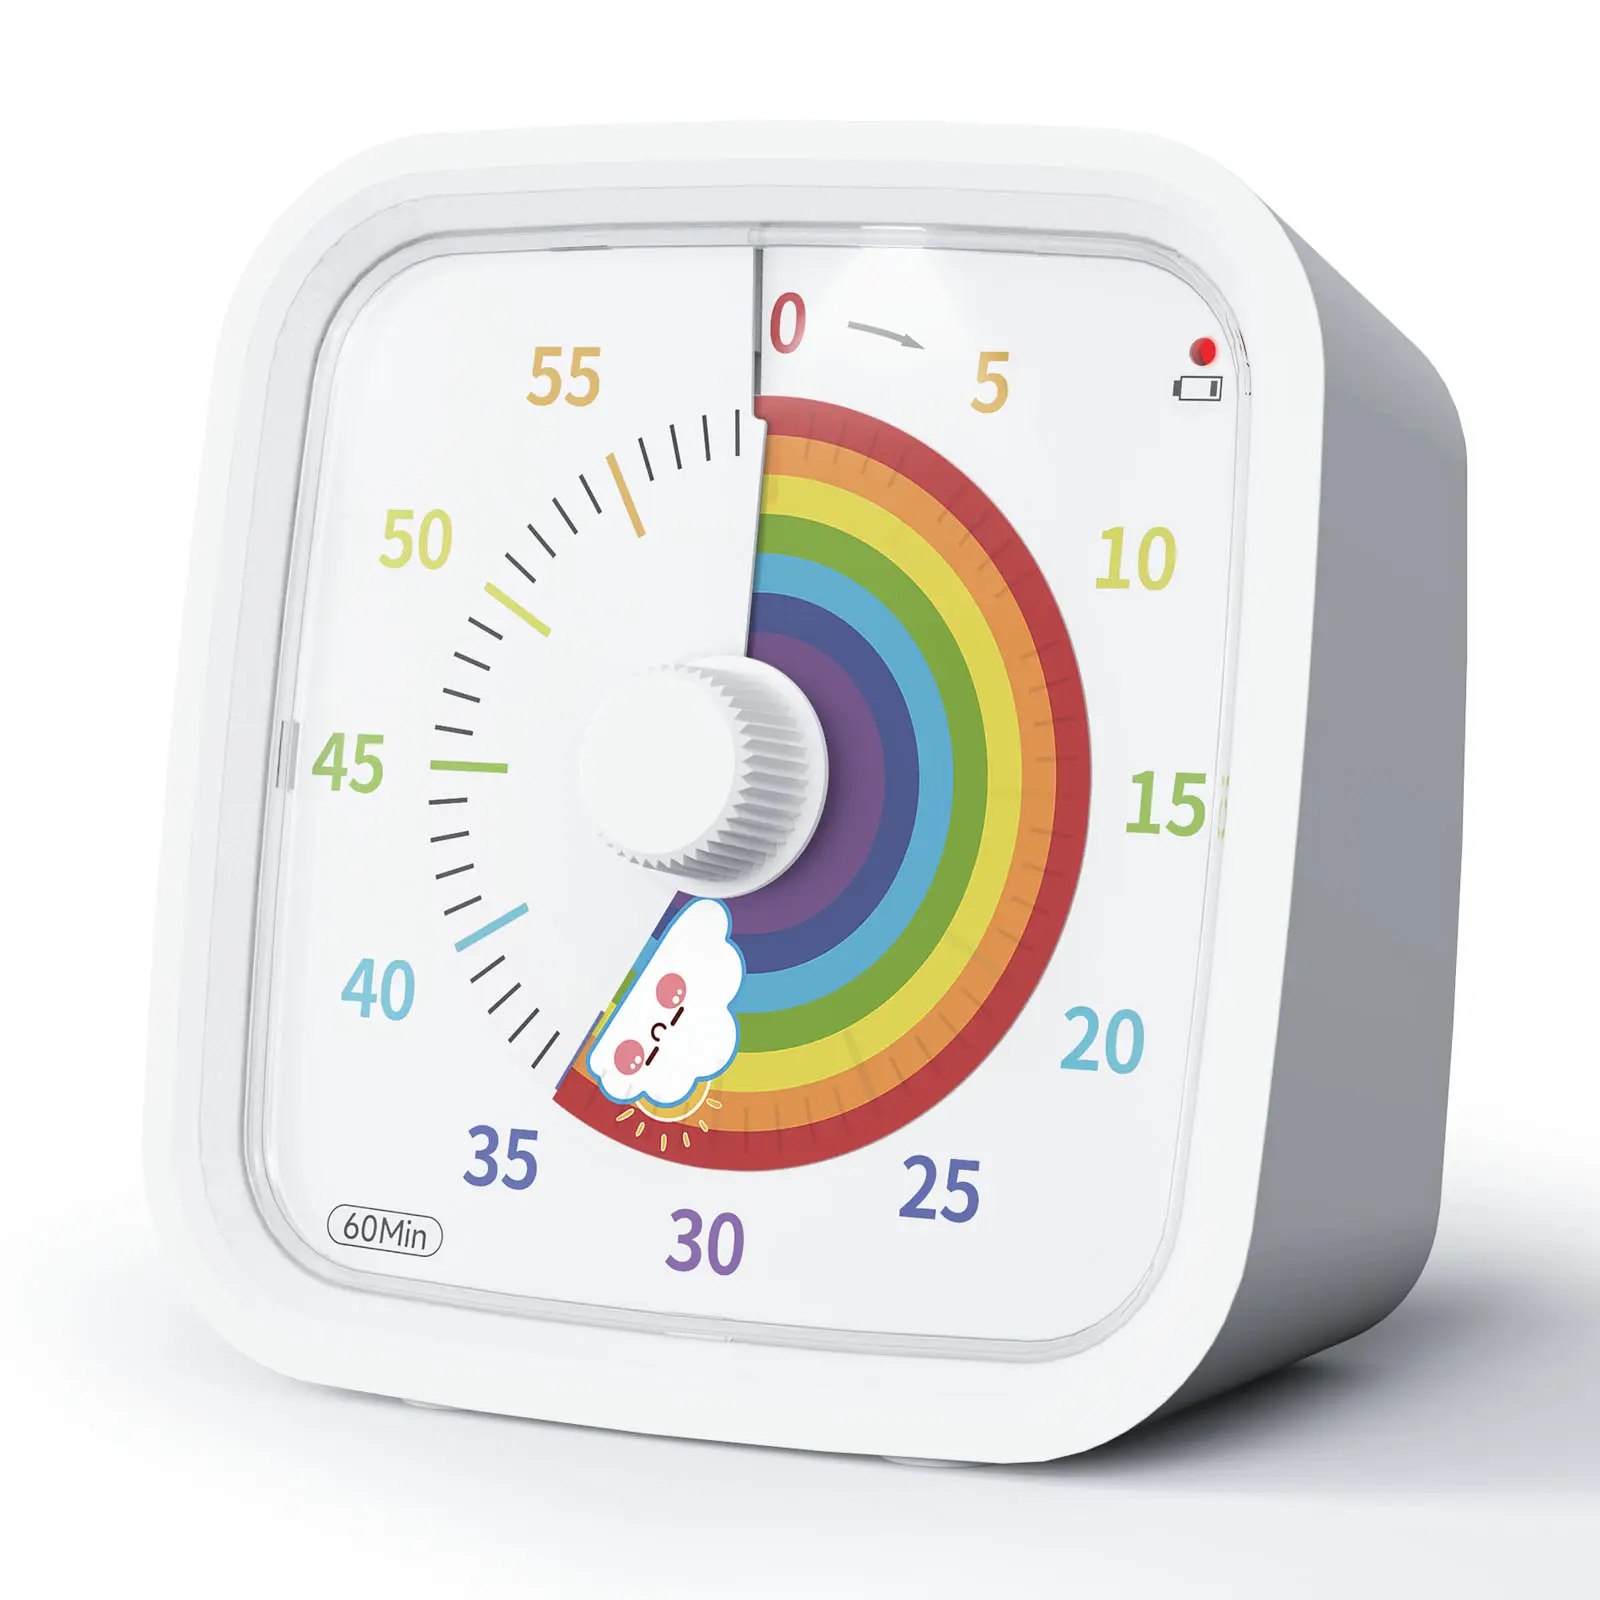 Yunbaoit OEM temporizador de productividad Google 60 minutos gestión del tiempo estudio silencioso cuenta regresiva temporizador de cocina temporizador Visual para niños